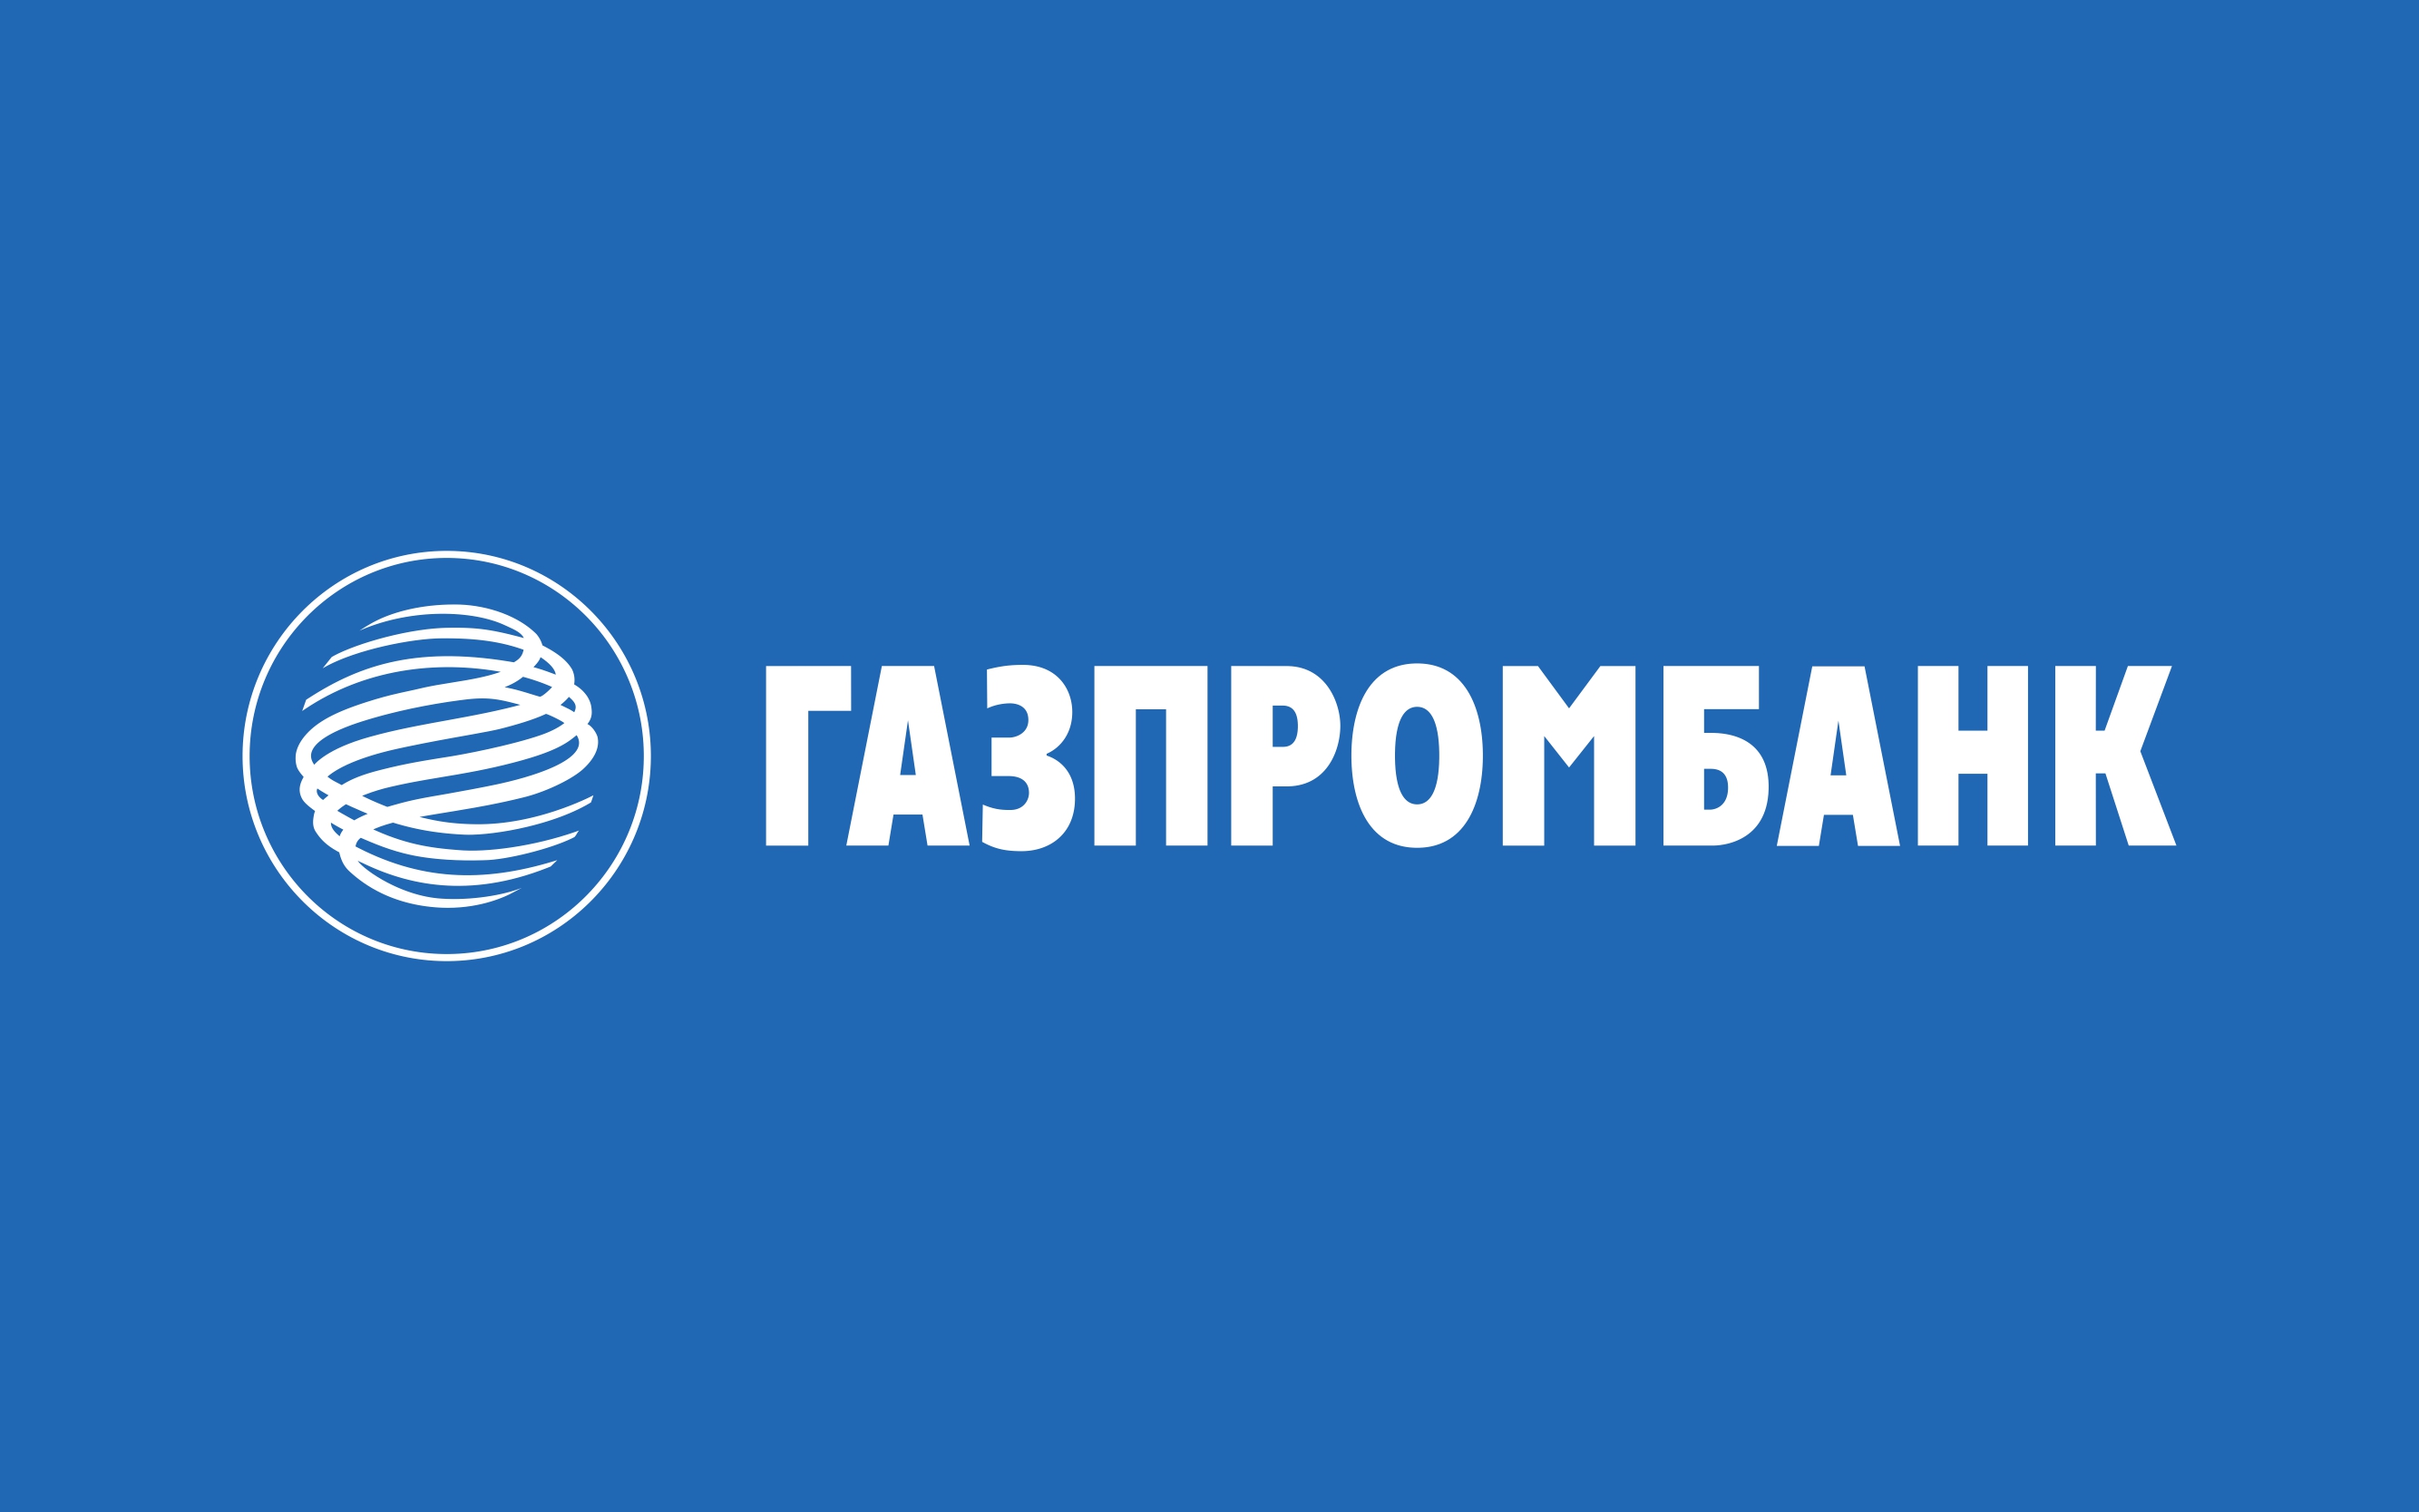 Gazprombank. Газпромбанк лого. Газпромбанк лизинг логотип. Газпромбанк автолизинг. Логотип банка Газпромбанк.